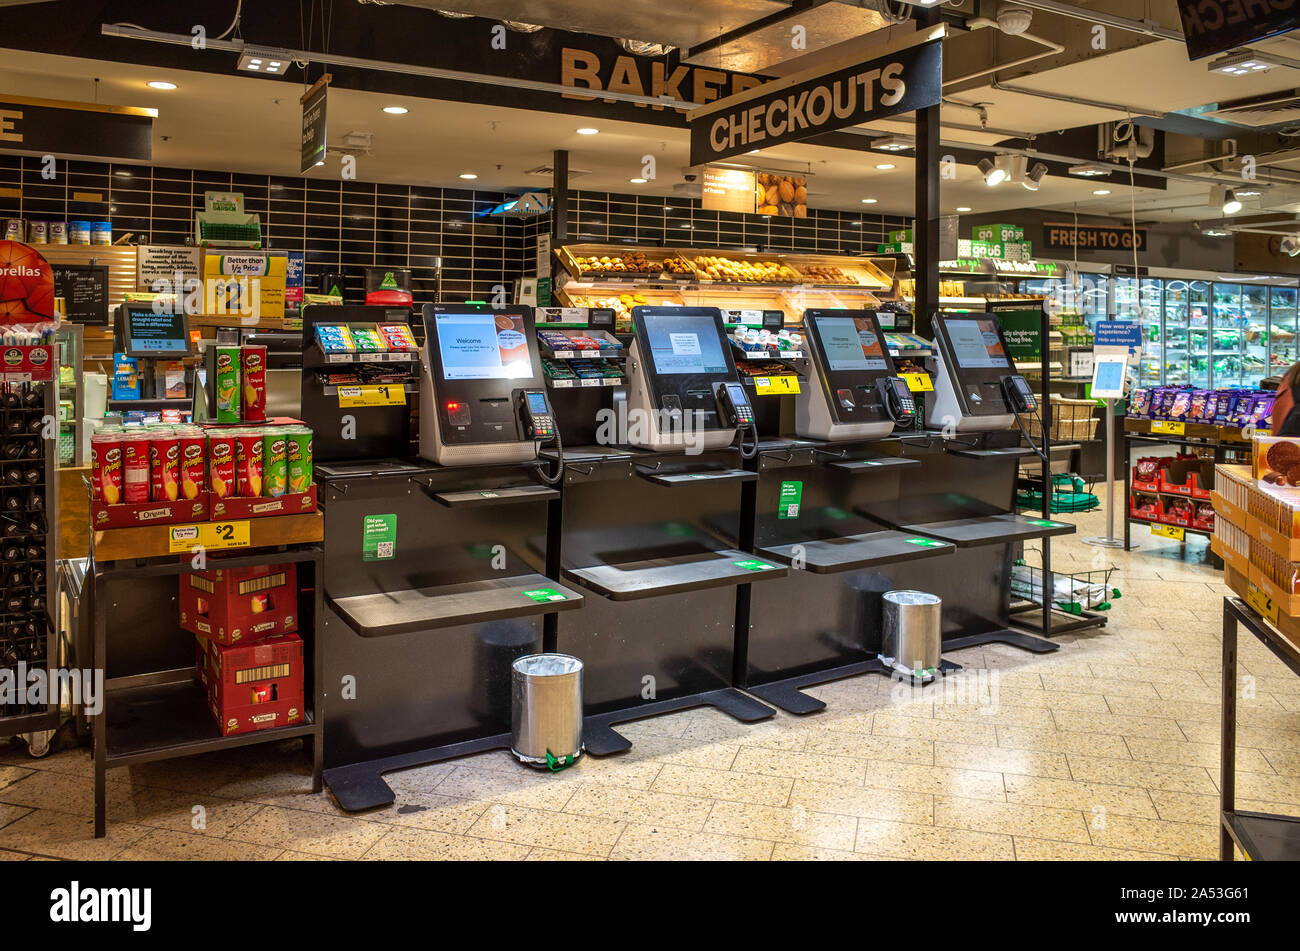 Einige Selbstabfertigung Maschinen in einem Supermarkt. Melbourne, VIC Australien. Stockfoto